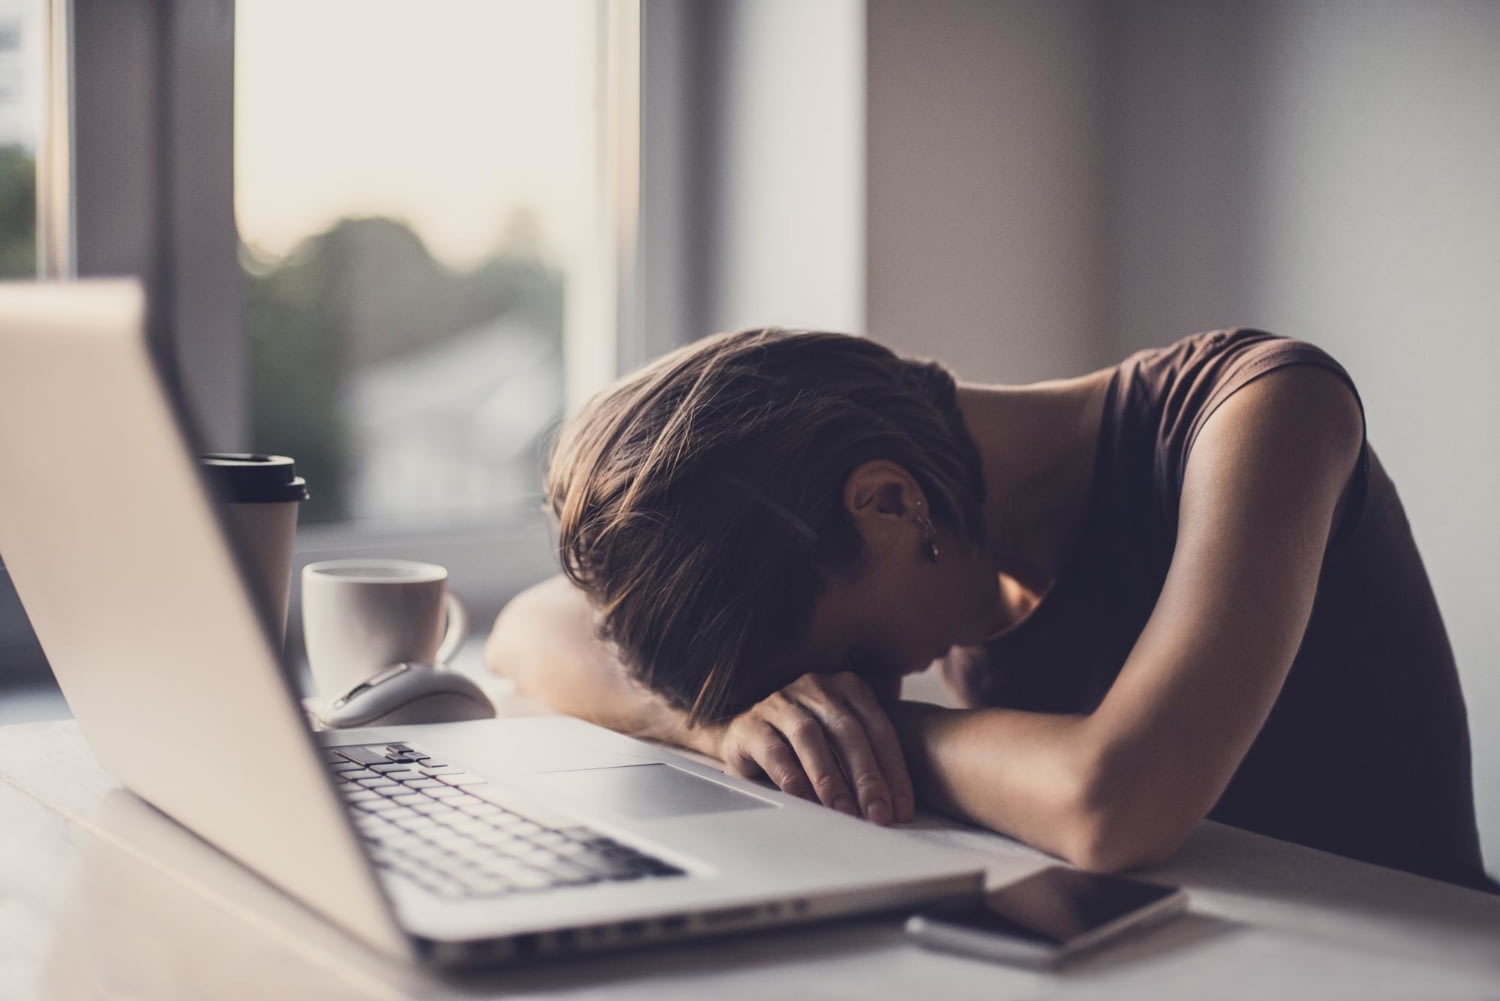 Junge Frau legt ihren Kopf erschöpft auf den vor ihr liegenden Laptop